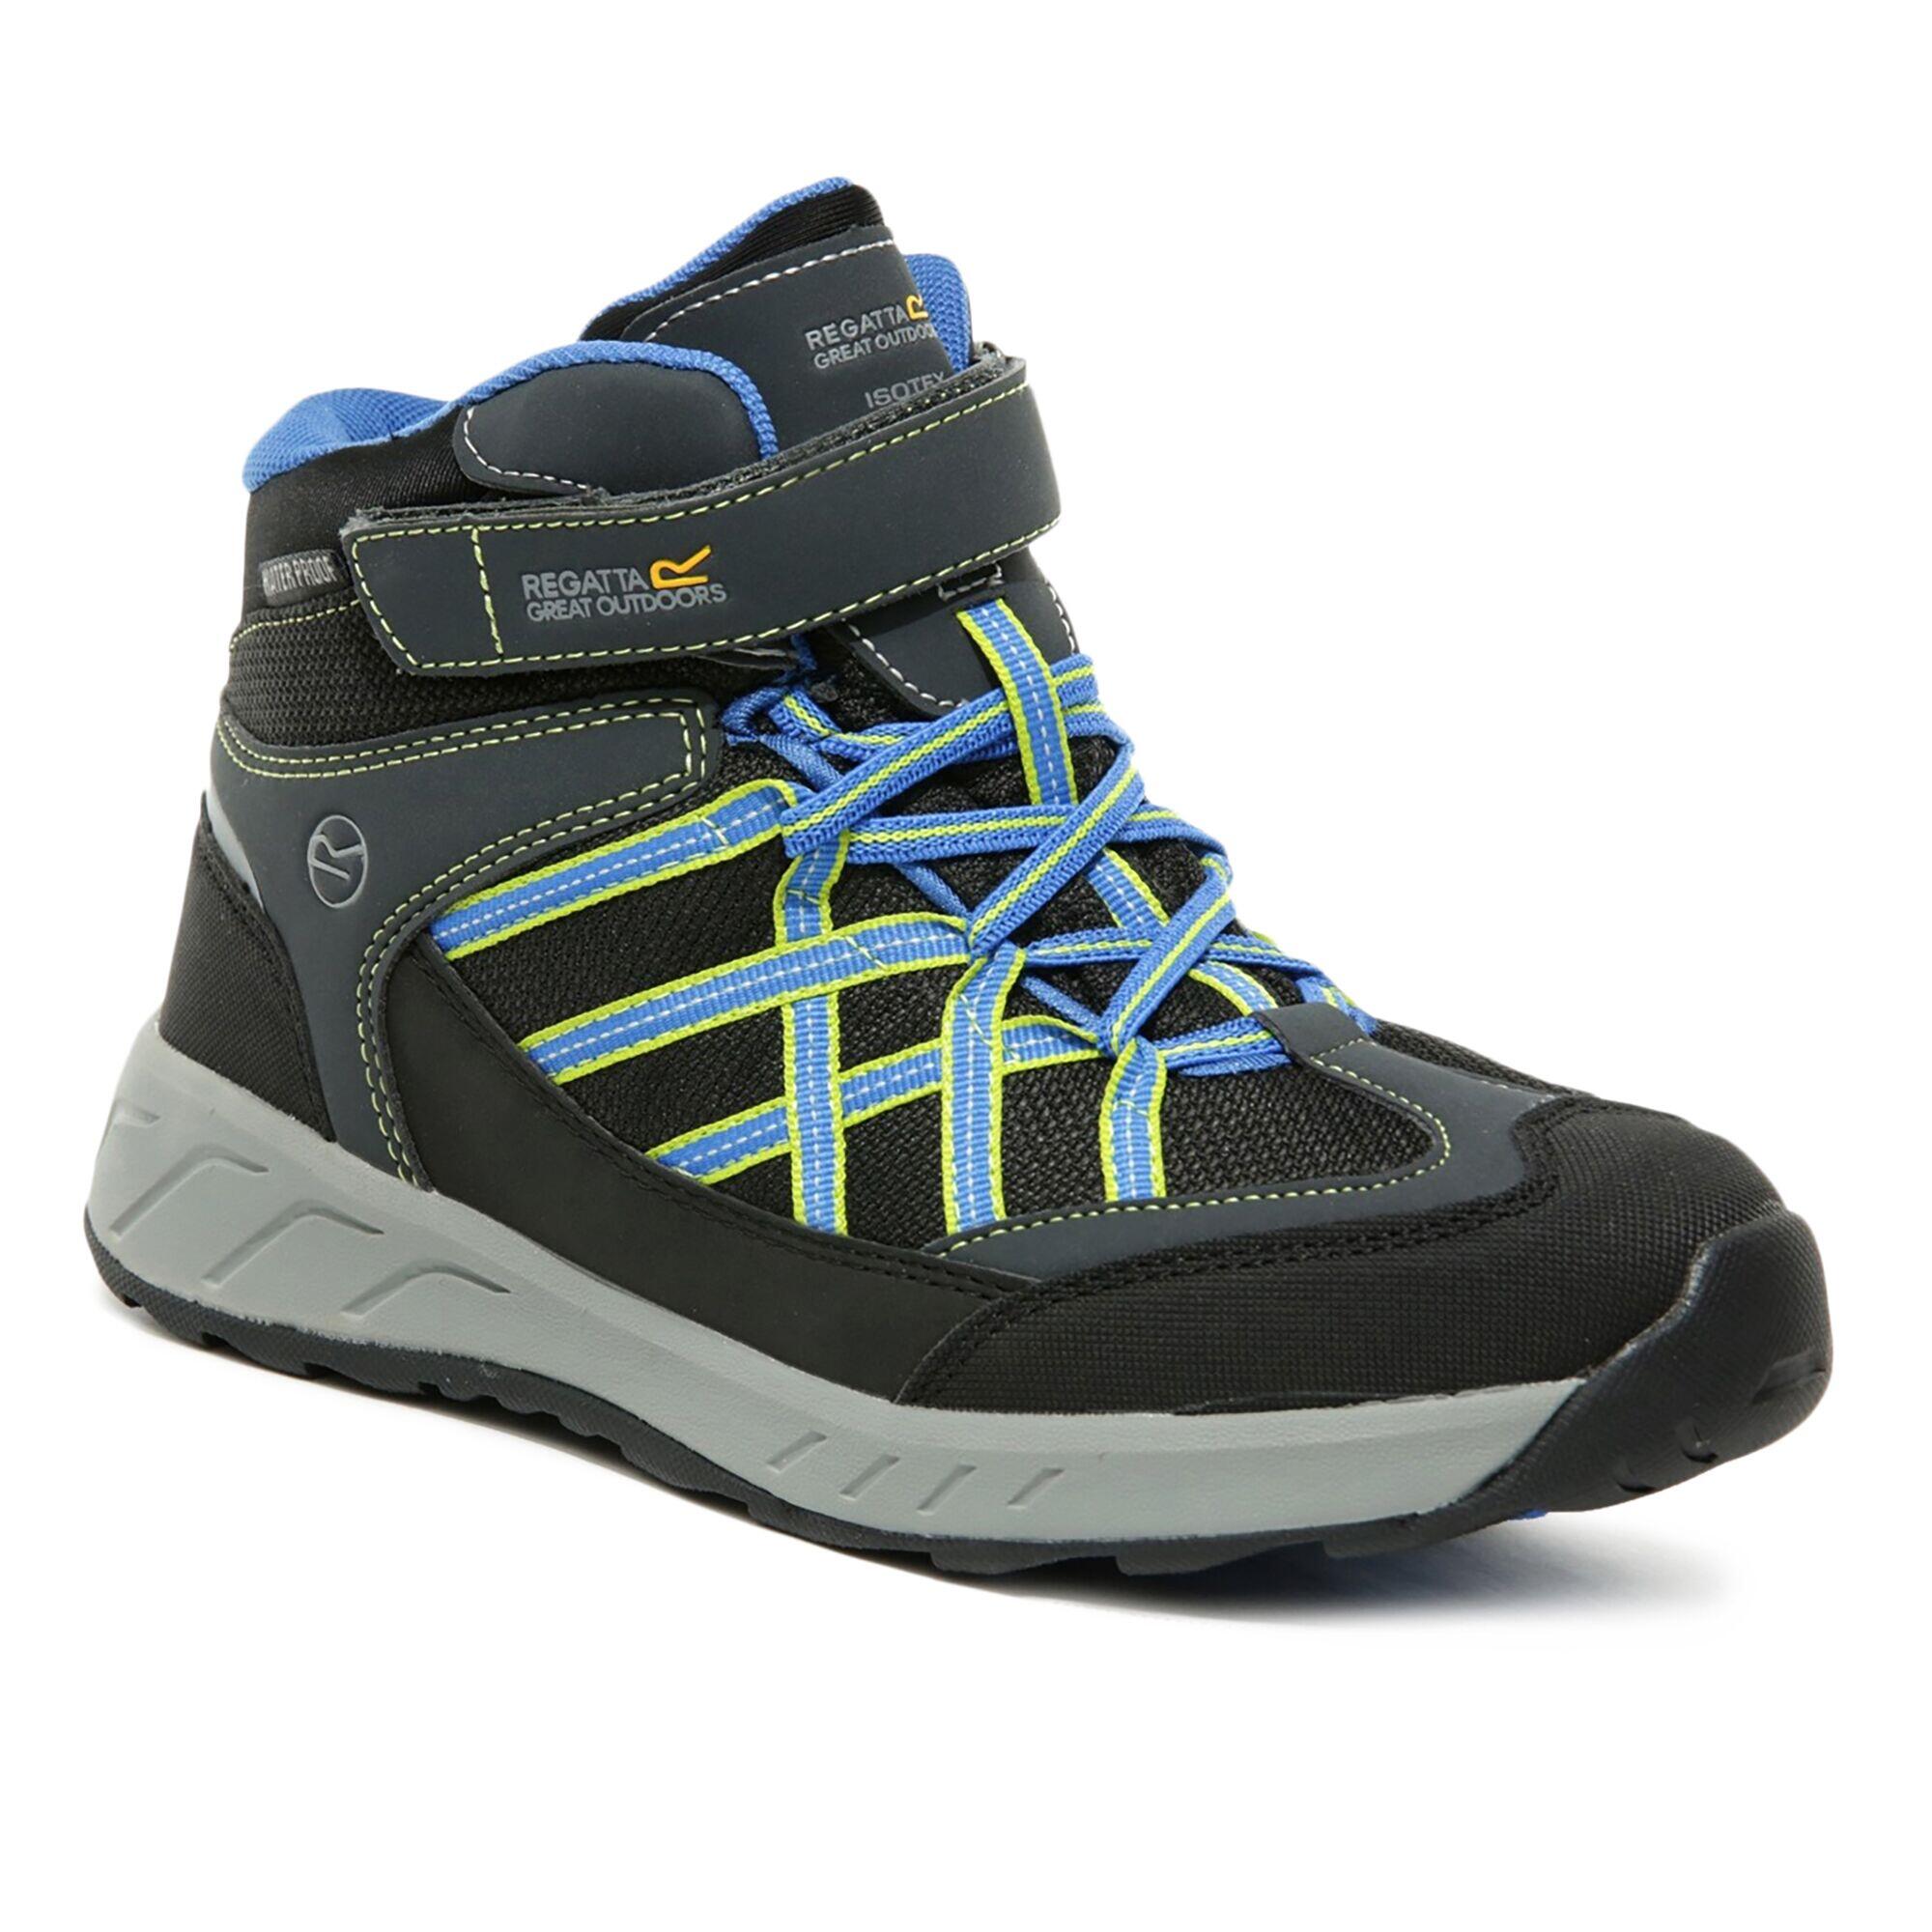 REGATTA Samaris V Kids' Hiking Waterproof Mid Boots - Grey/Blue